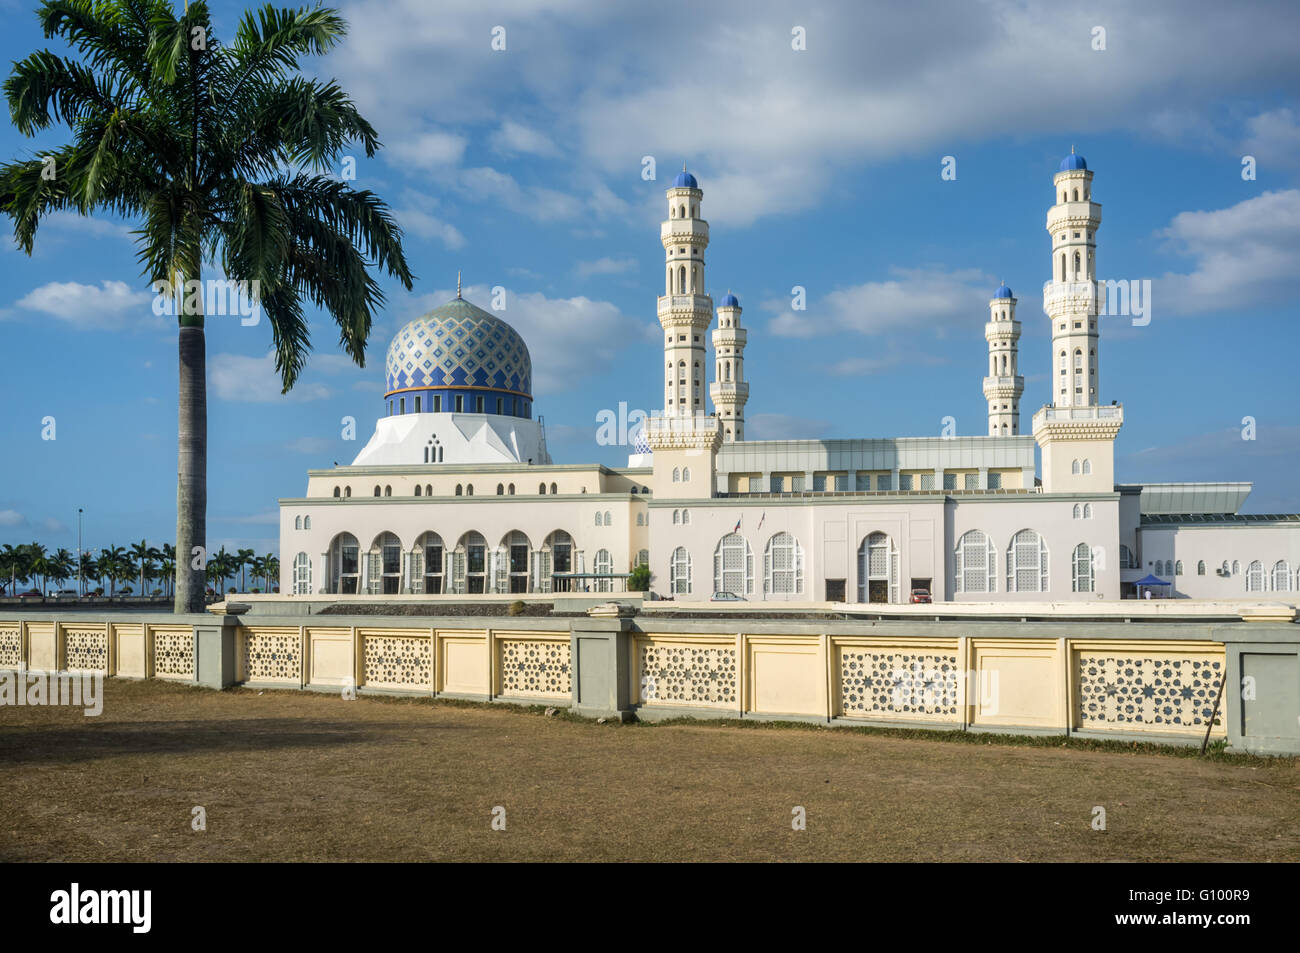 Kota Kinablu City Mosque, Sabah, Malaysia Borneo. Stock Photo